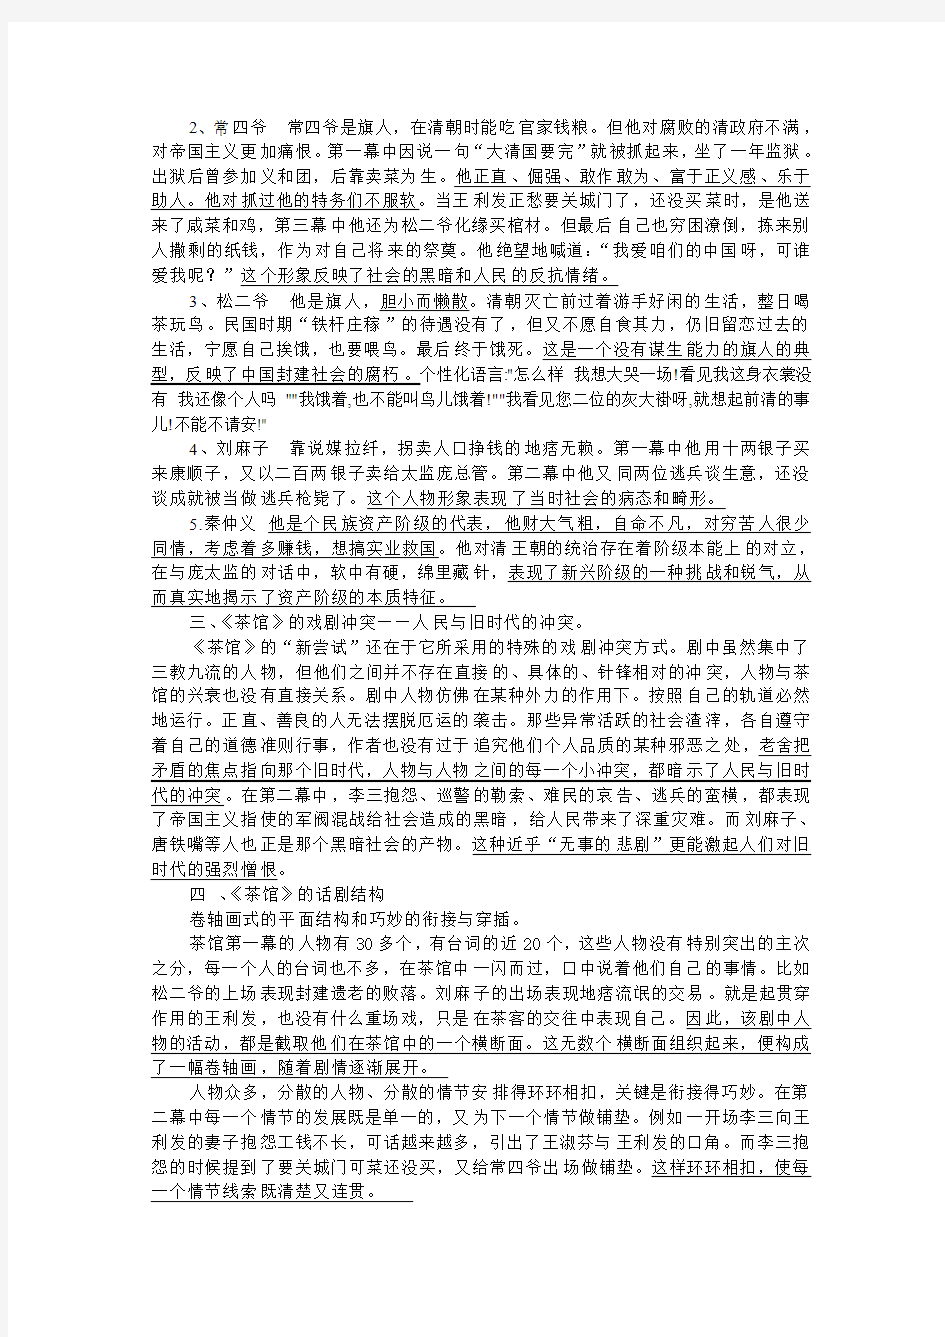 2013江苏高考名著阅读《茶馆》